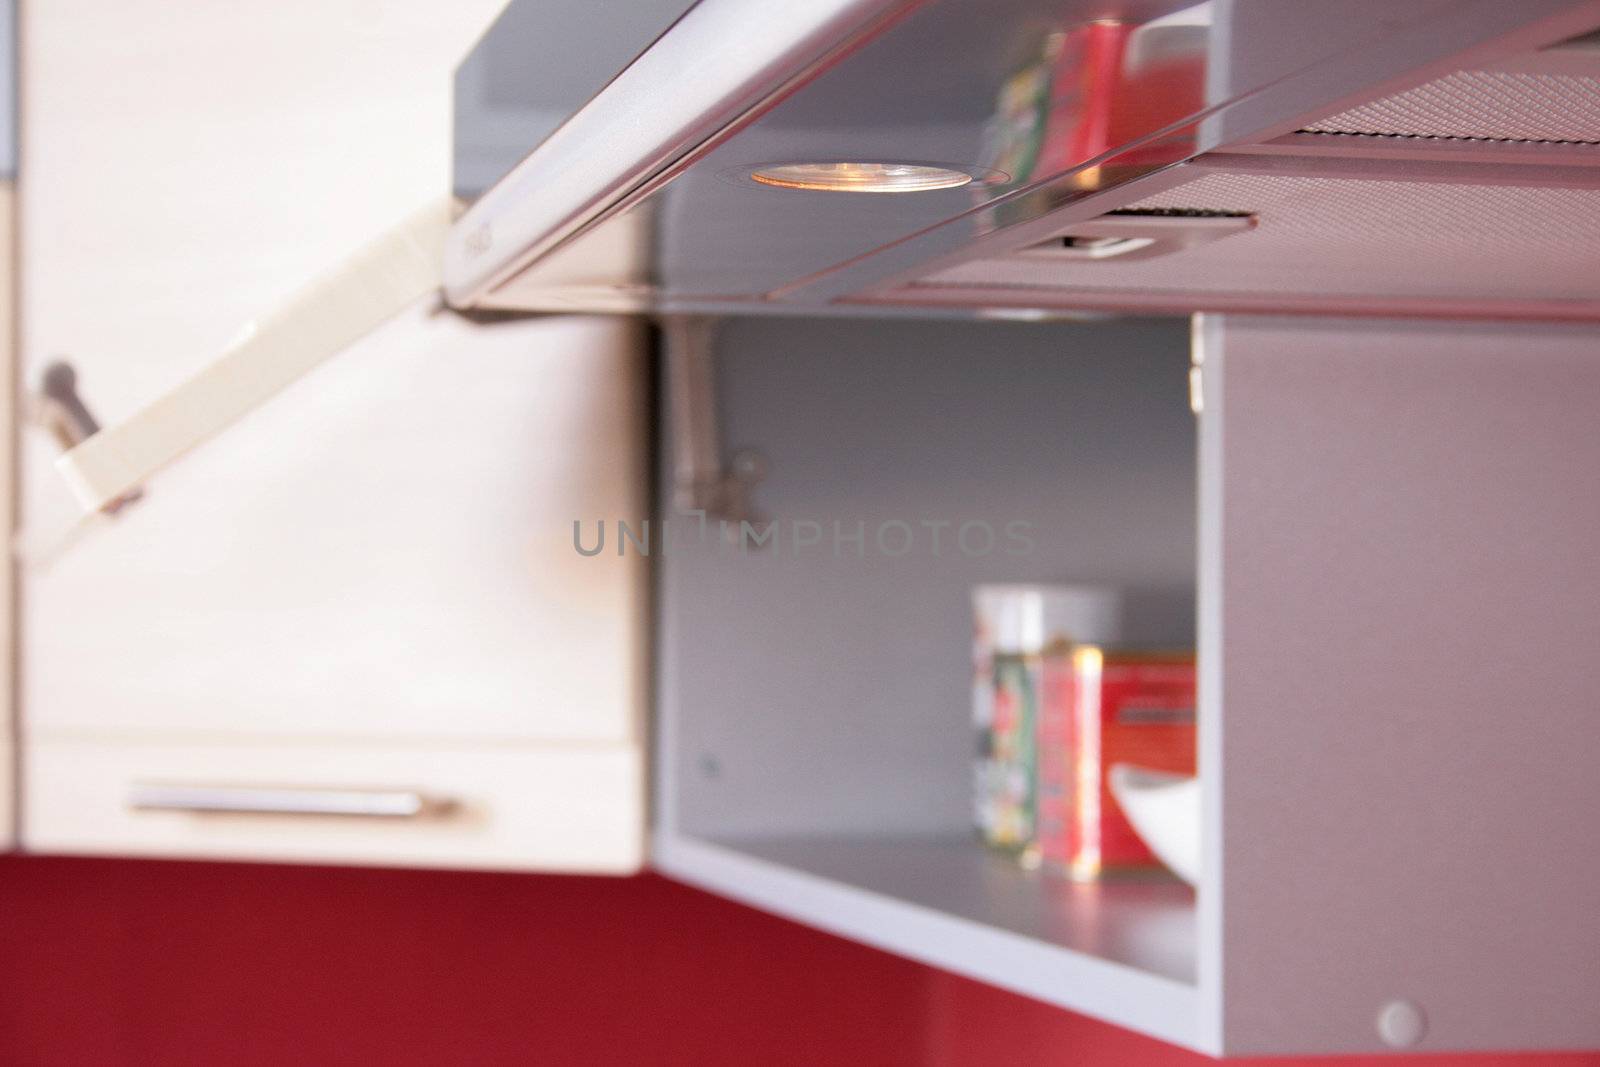 modern kitchen furniture for home interior